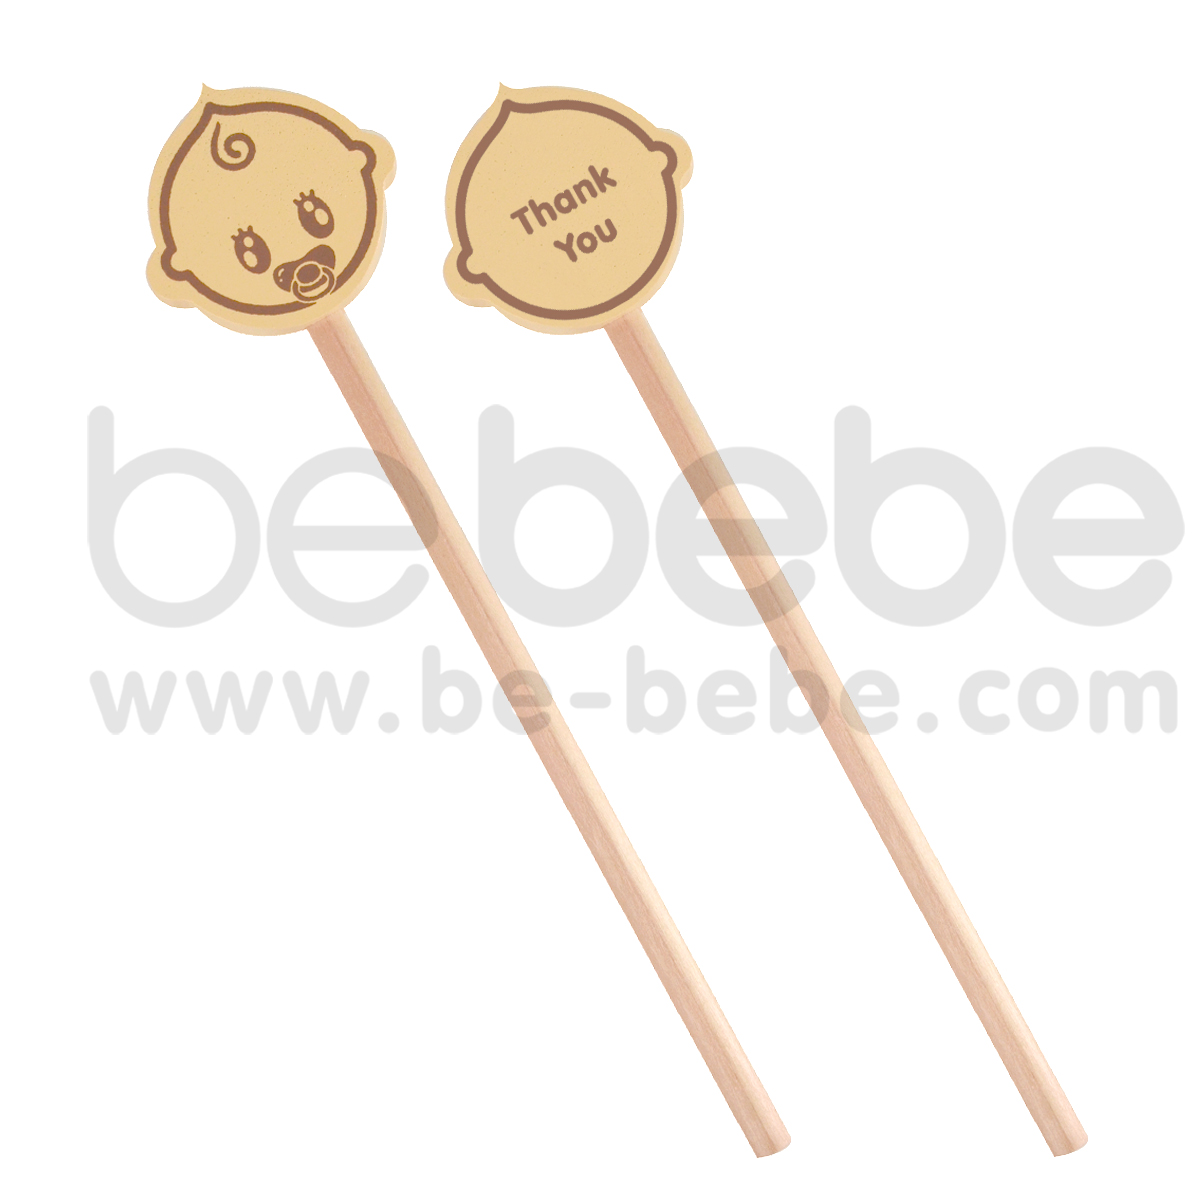 bebebe : Cream Pencil- Thank You